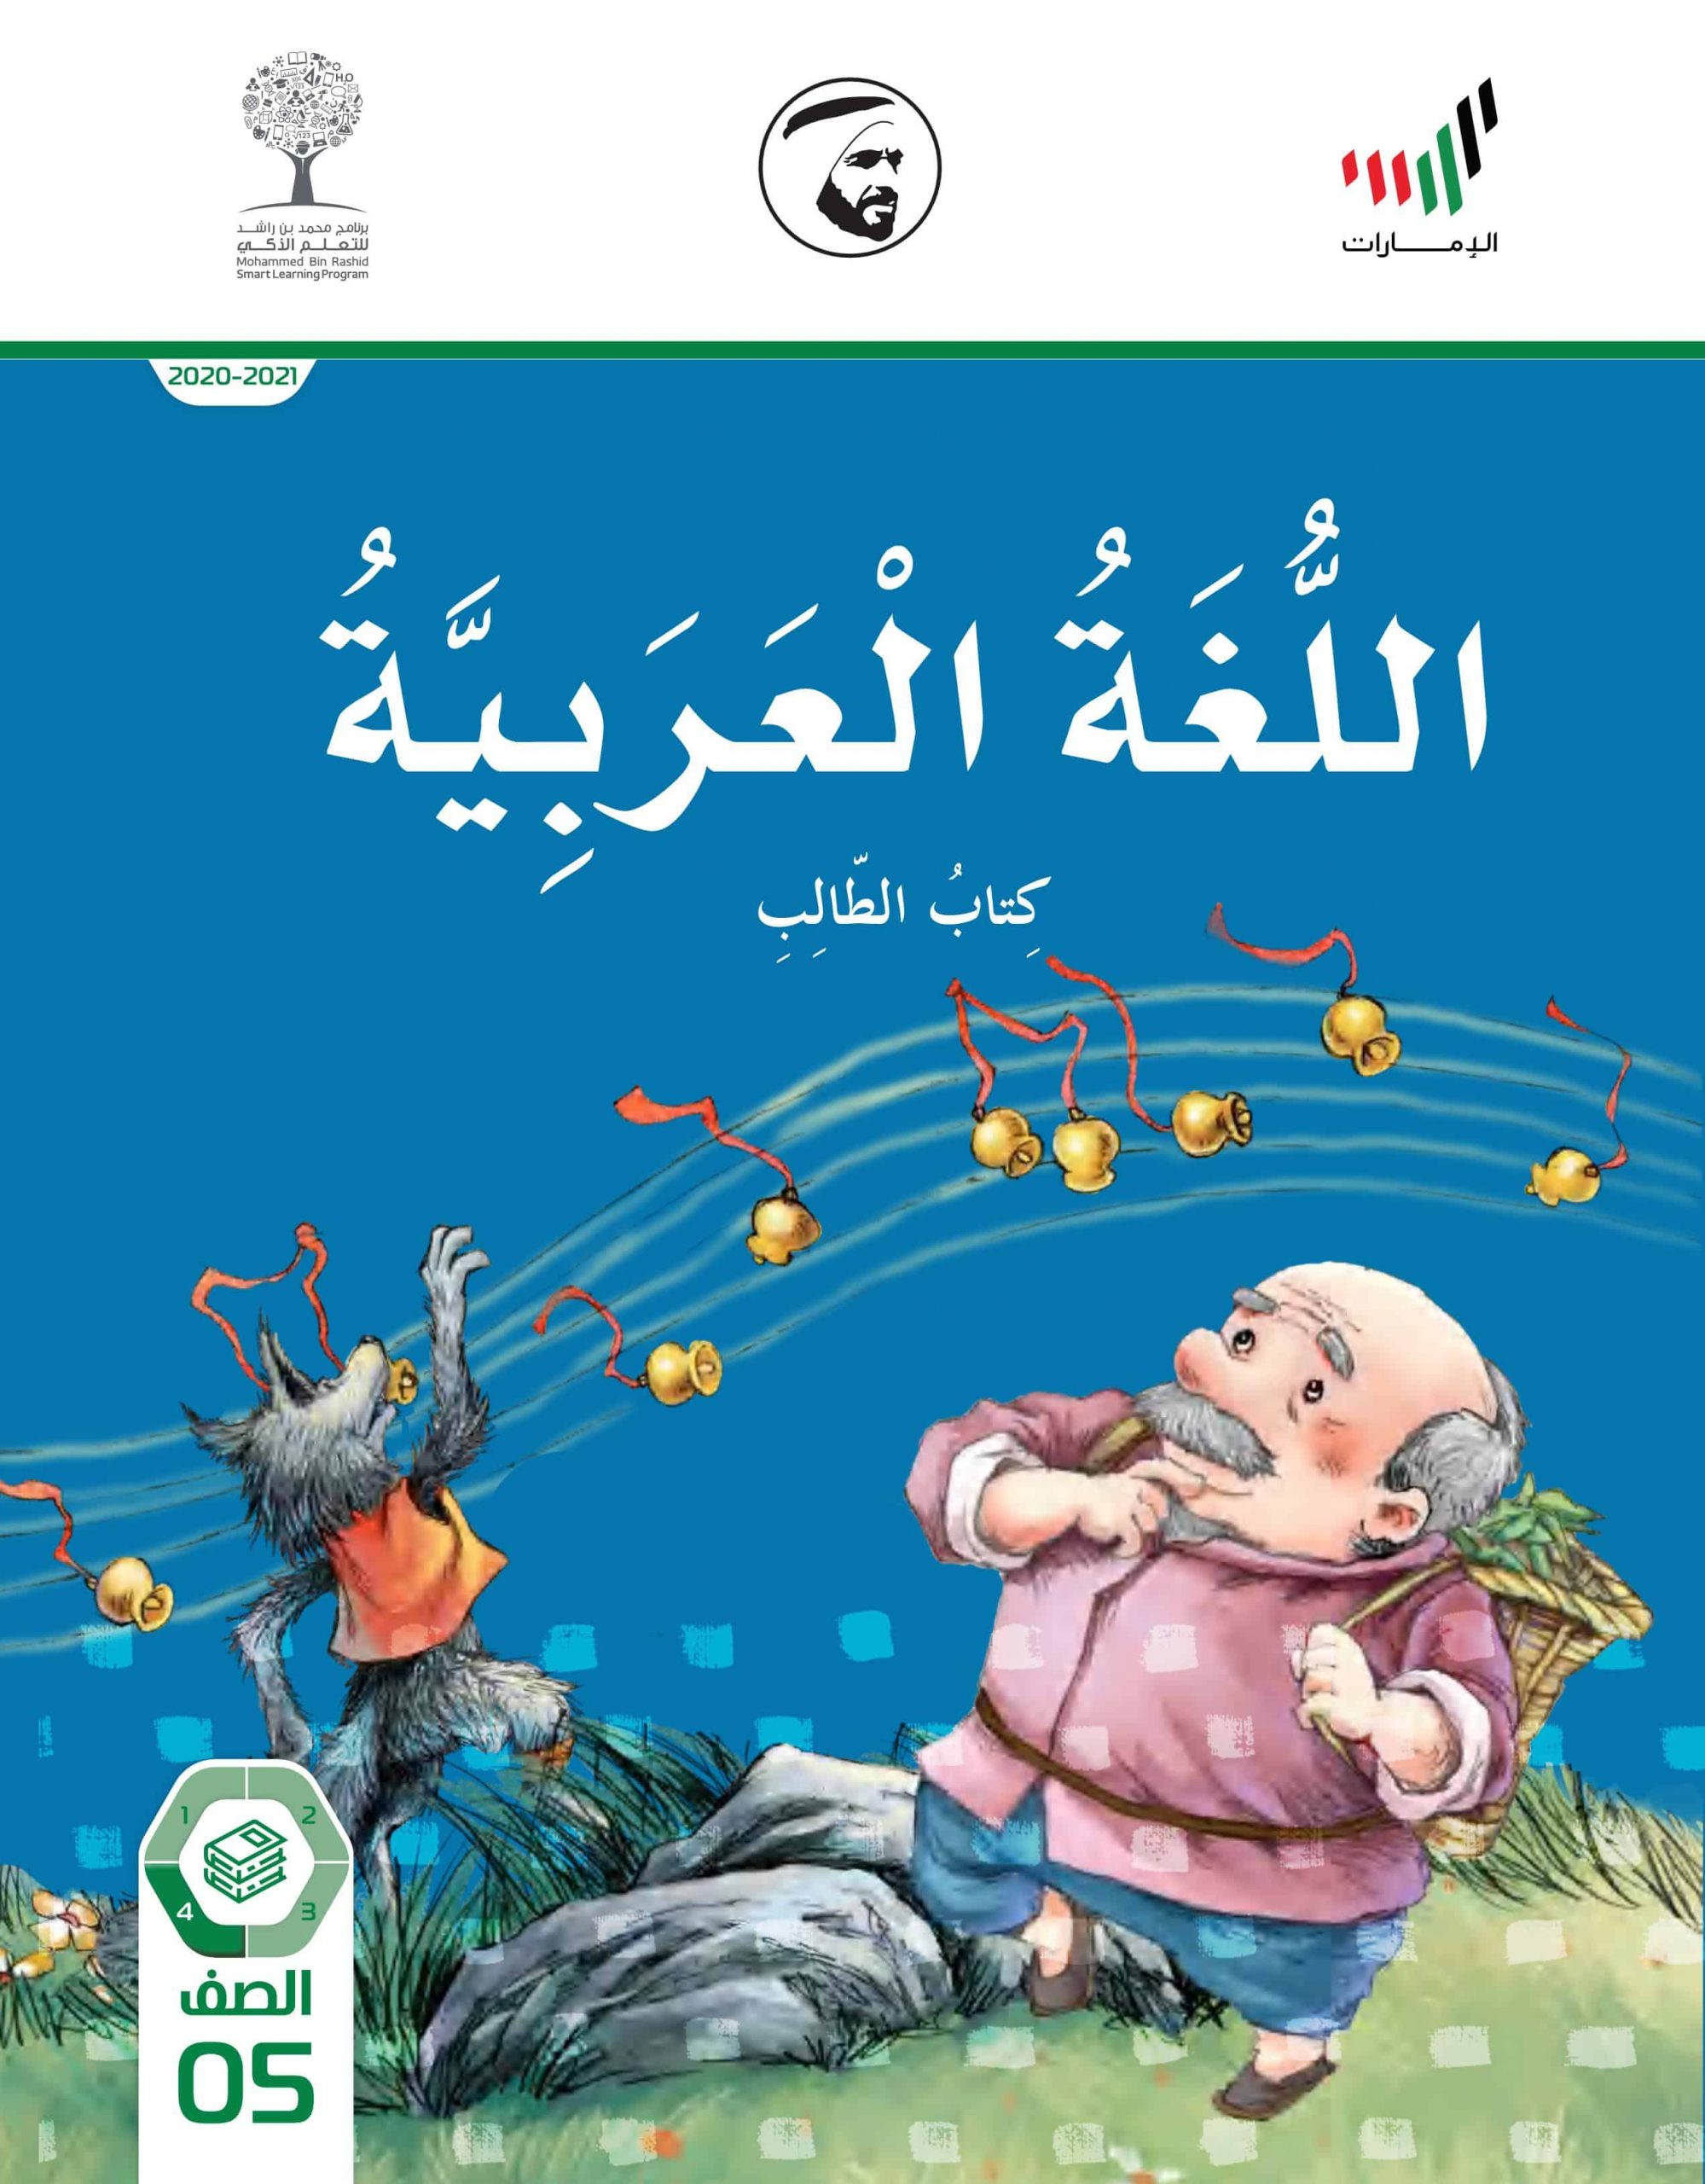 كتاب الطالب الفصل الدراسي الثالث 2020 -2021 الصف الخامس مادة اللغة العربية